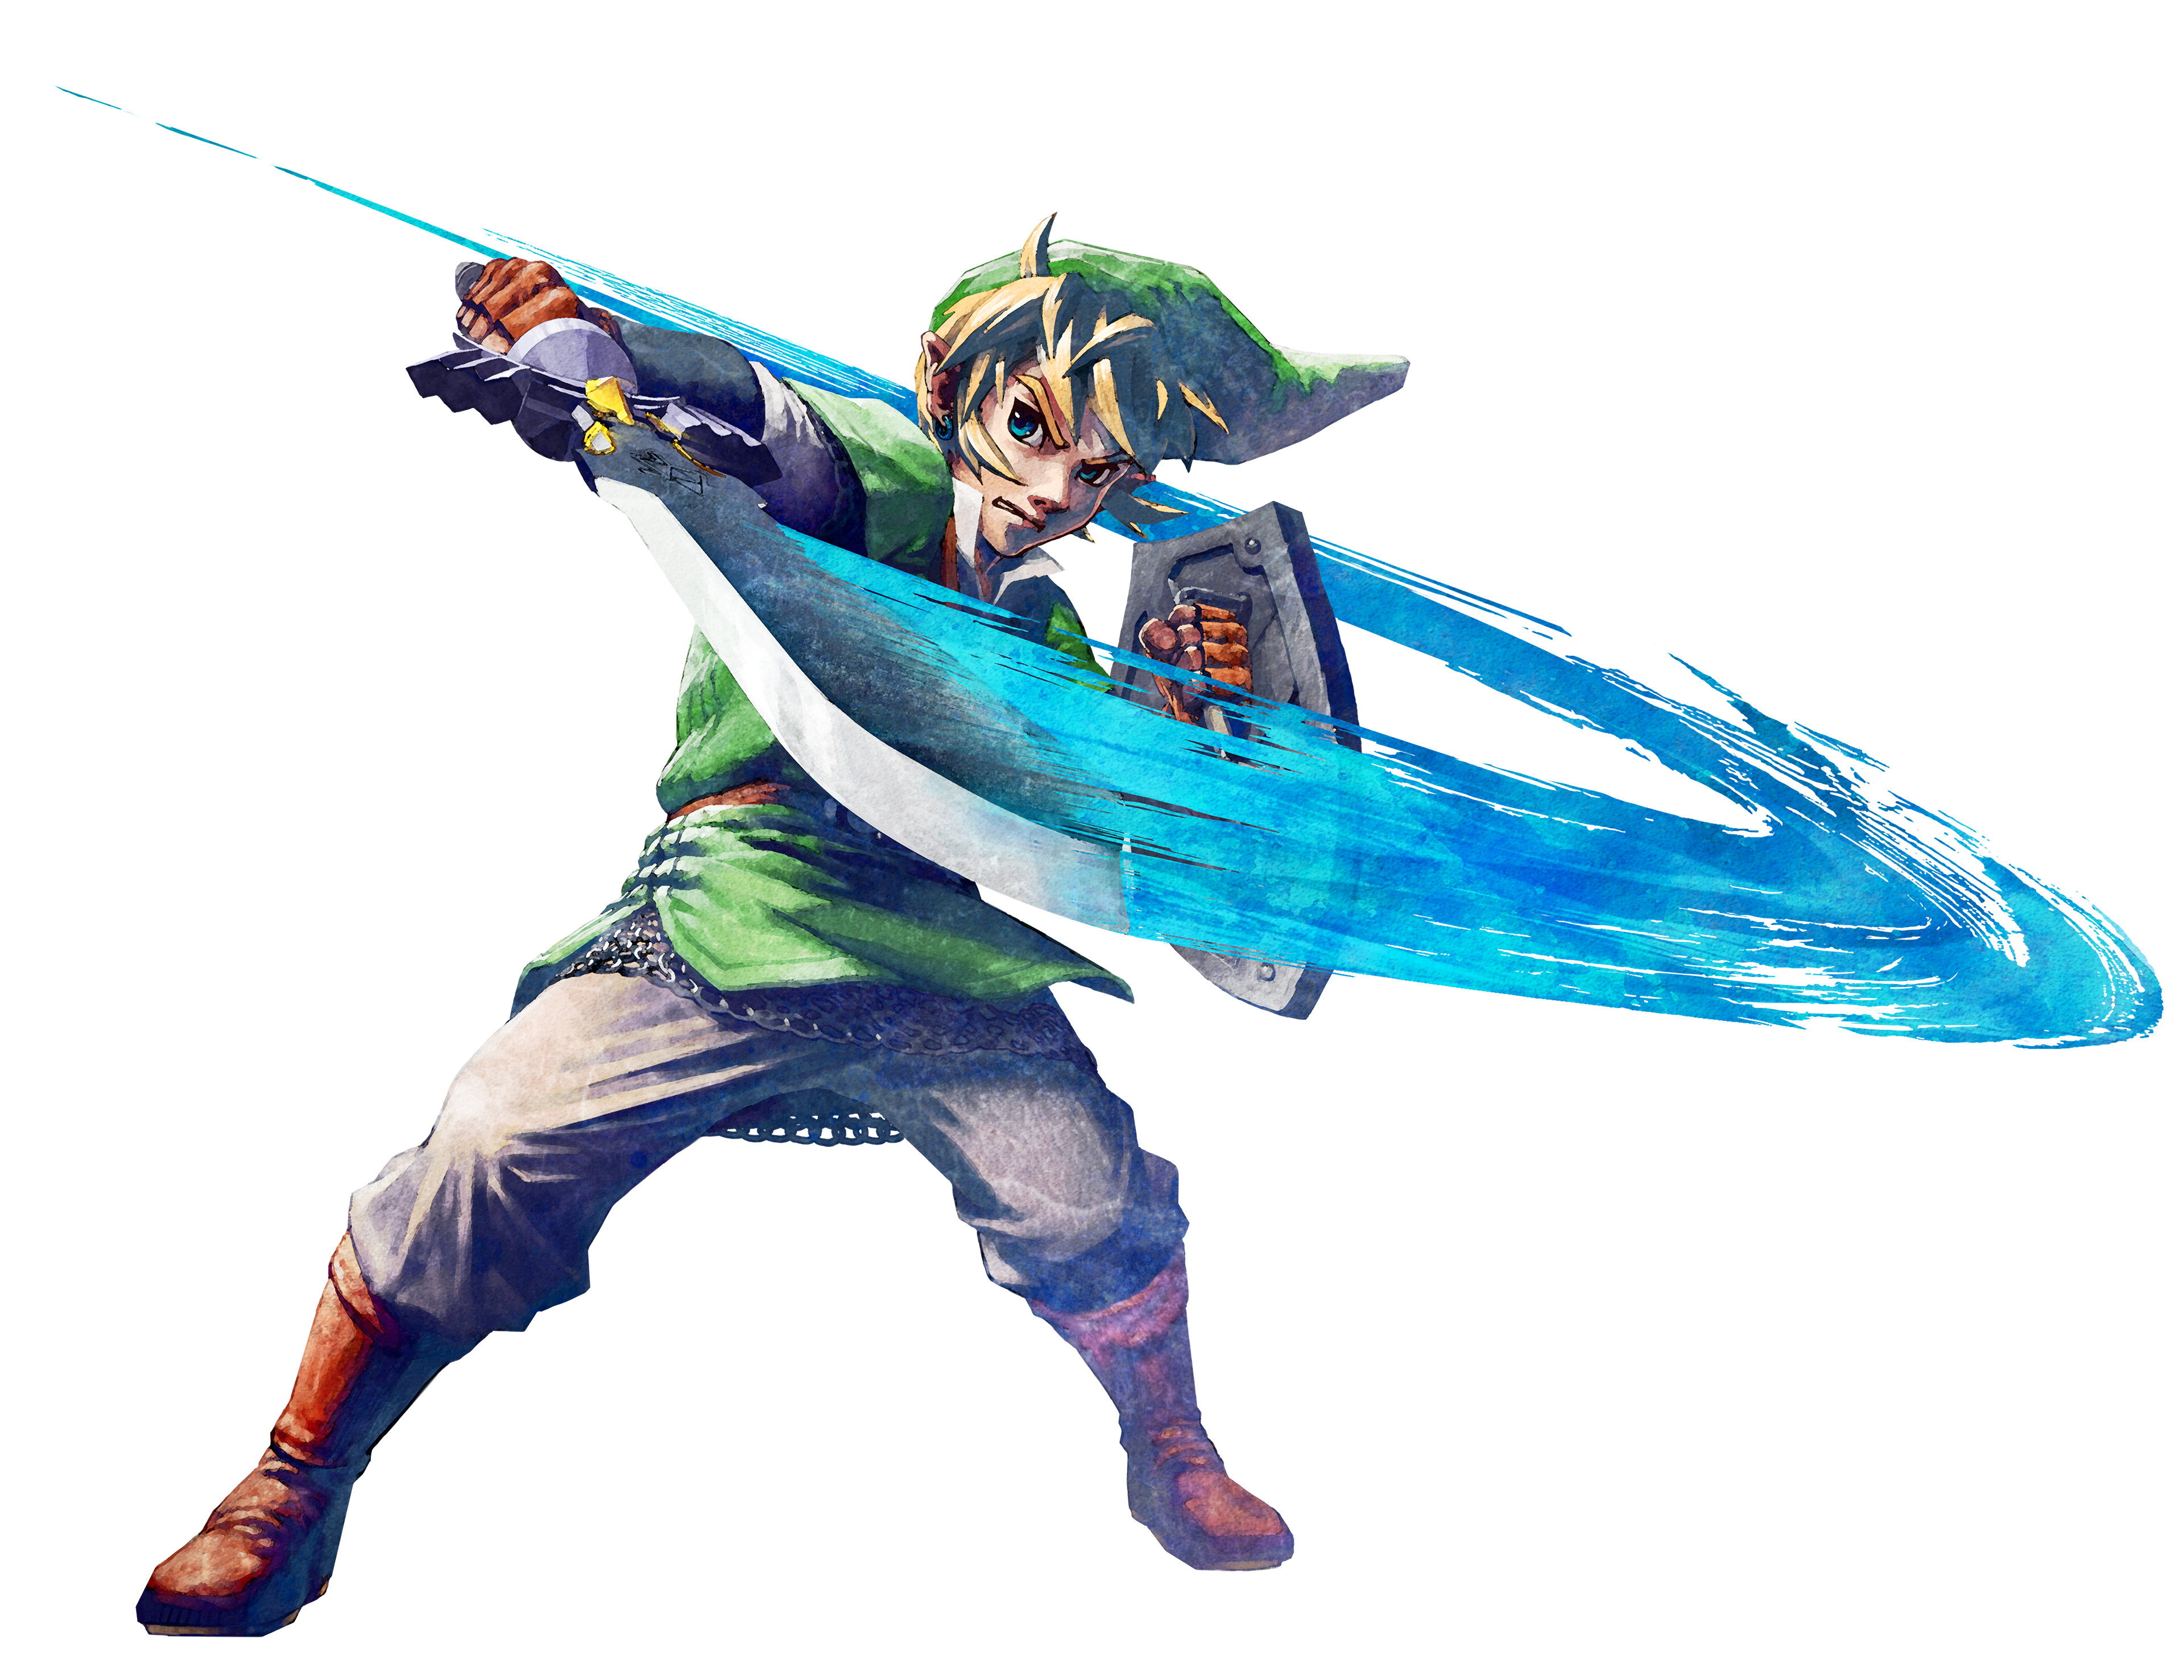 Reference: Legend of Zelda: Skyward Sword Poster Art